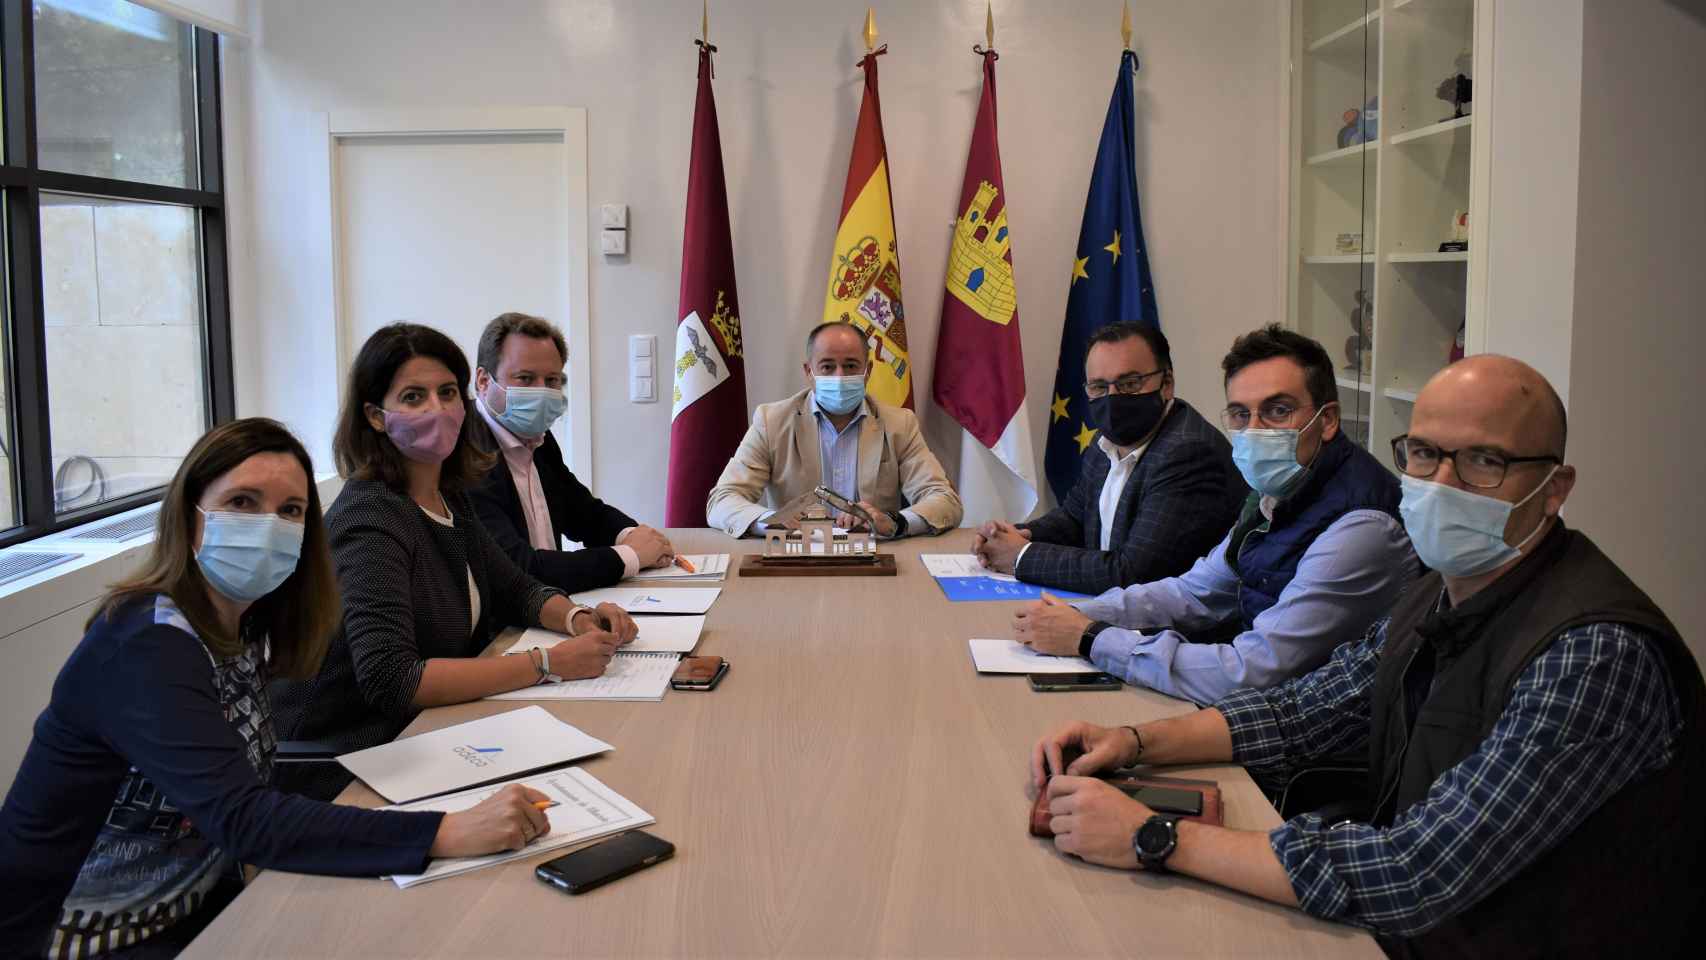 El alcalde de Albacete se compromete a seguir mejorando Campollano